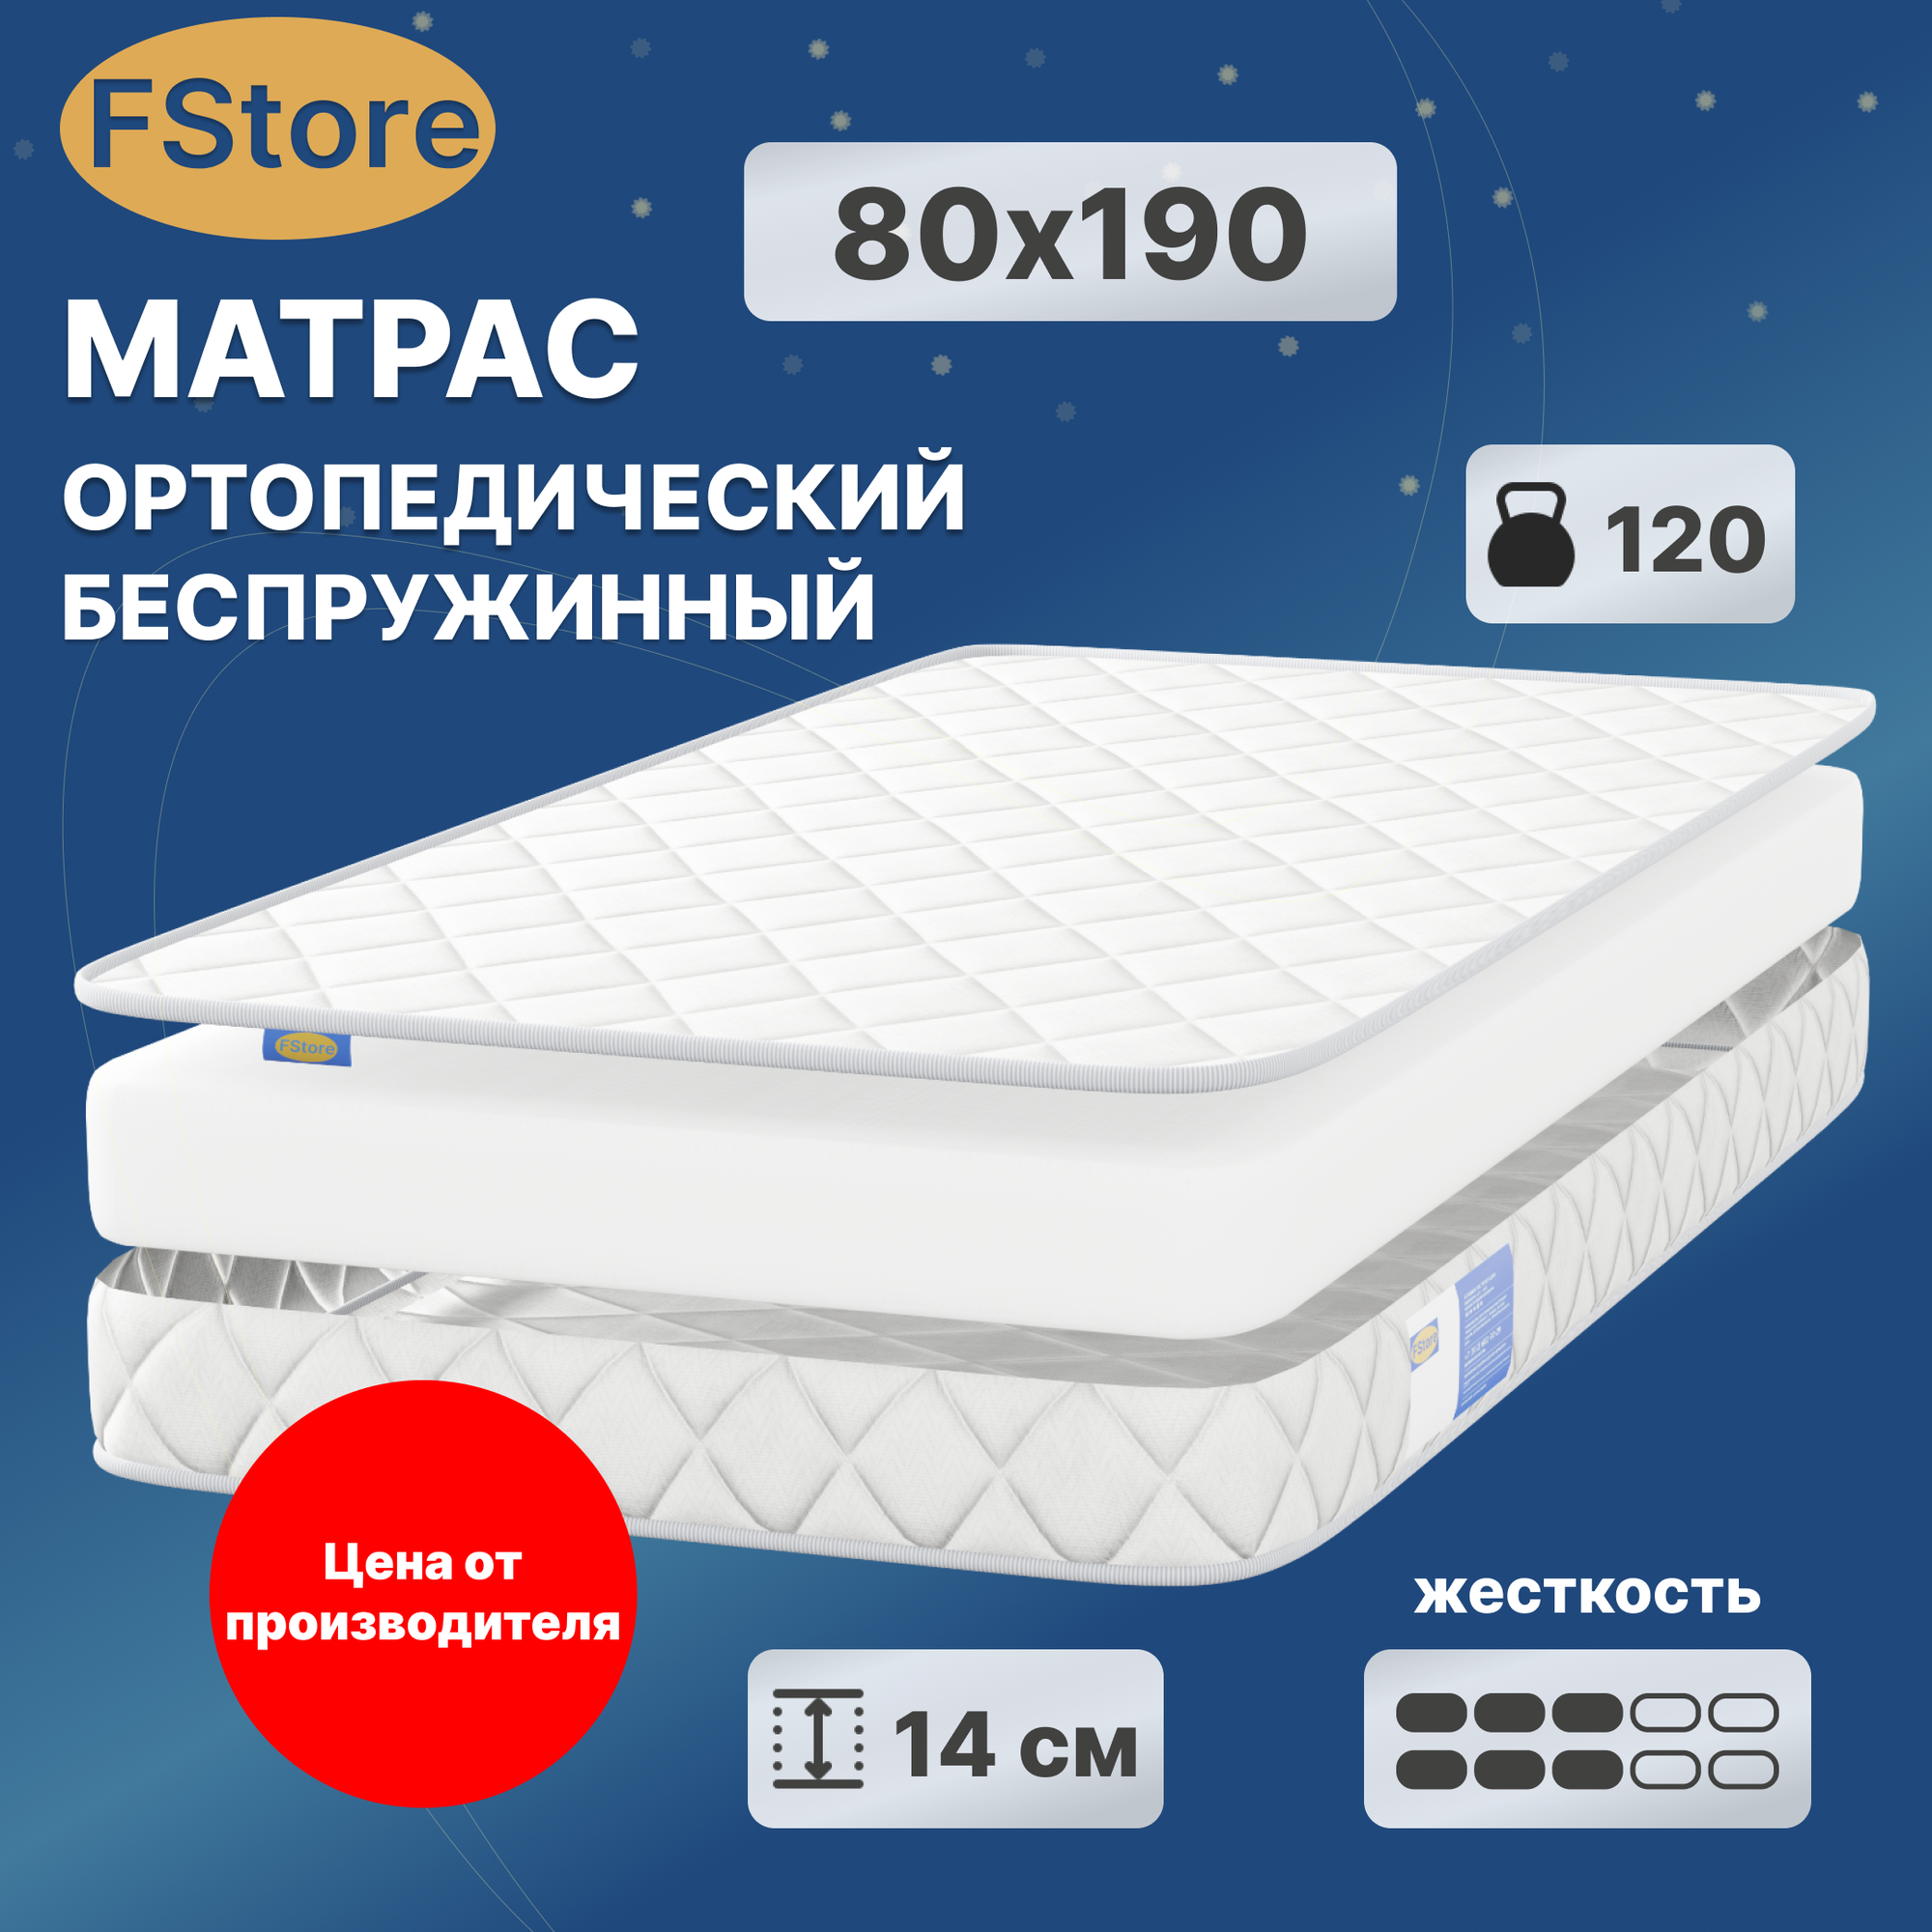 Матрас FStore Eco Flex, Беспружинный, 80х190 см